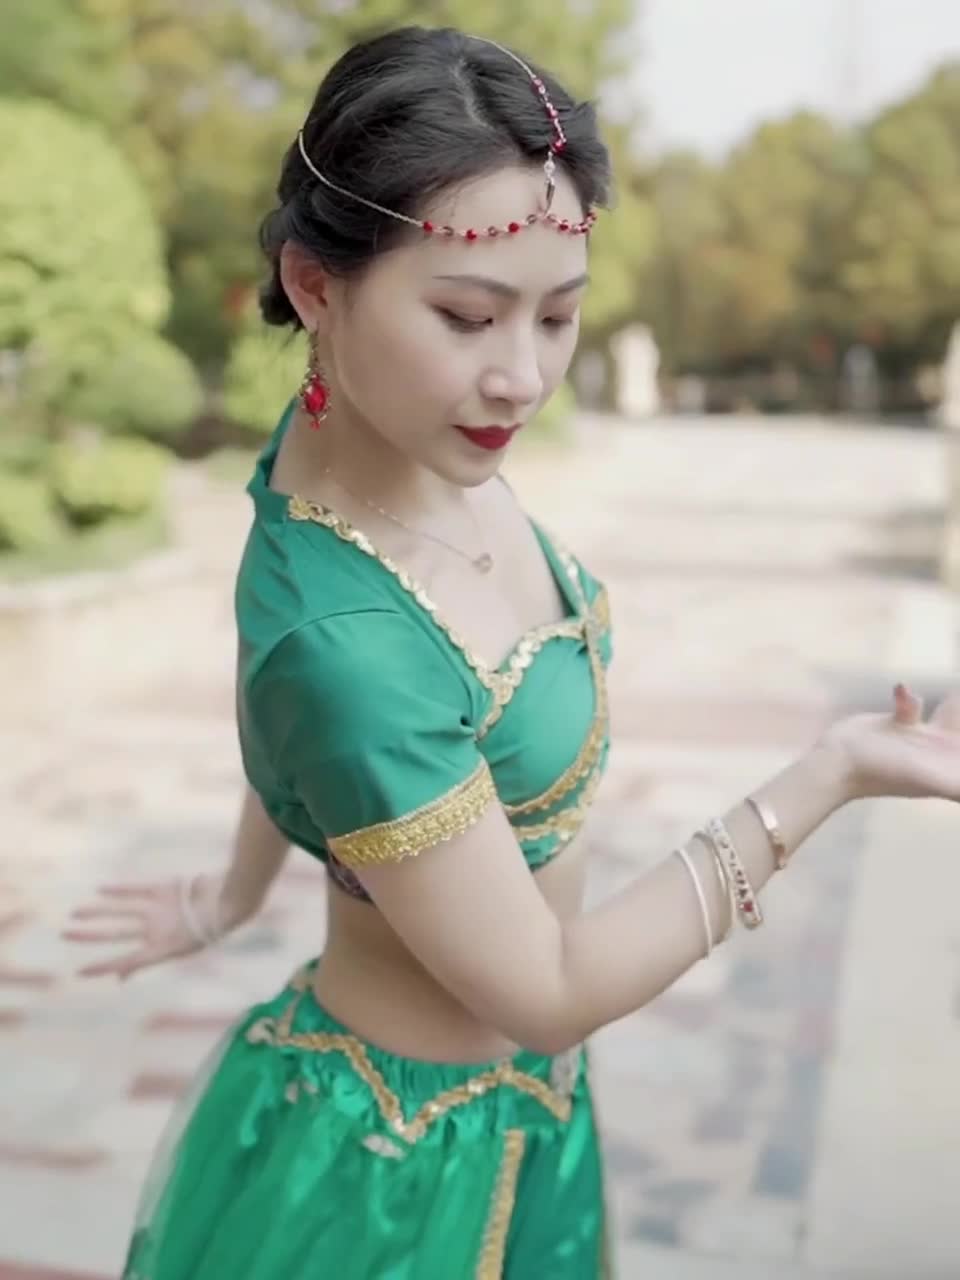 Princesa Jasmine para mujer, danza del vientre india, princesa árabe,  disfraz de Carnaval de Halloween, conjunto L